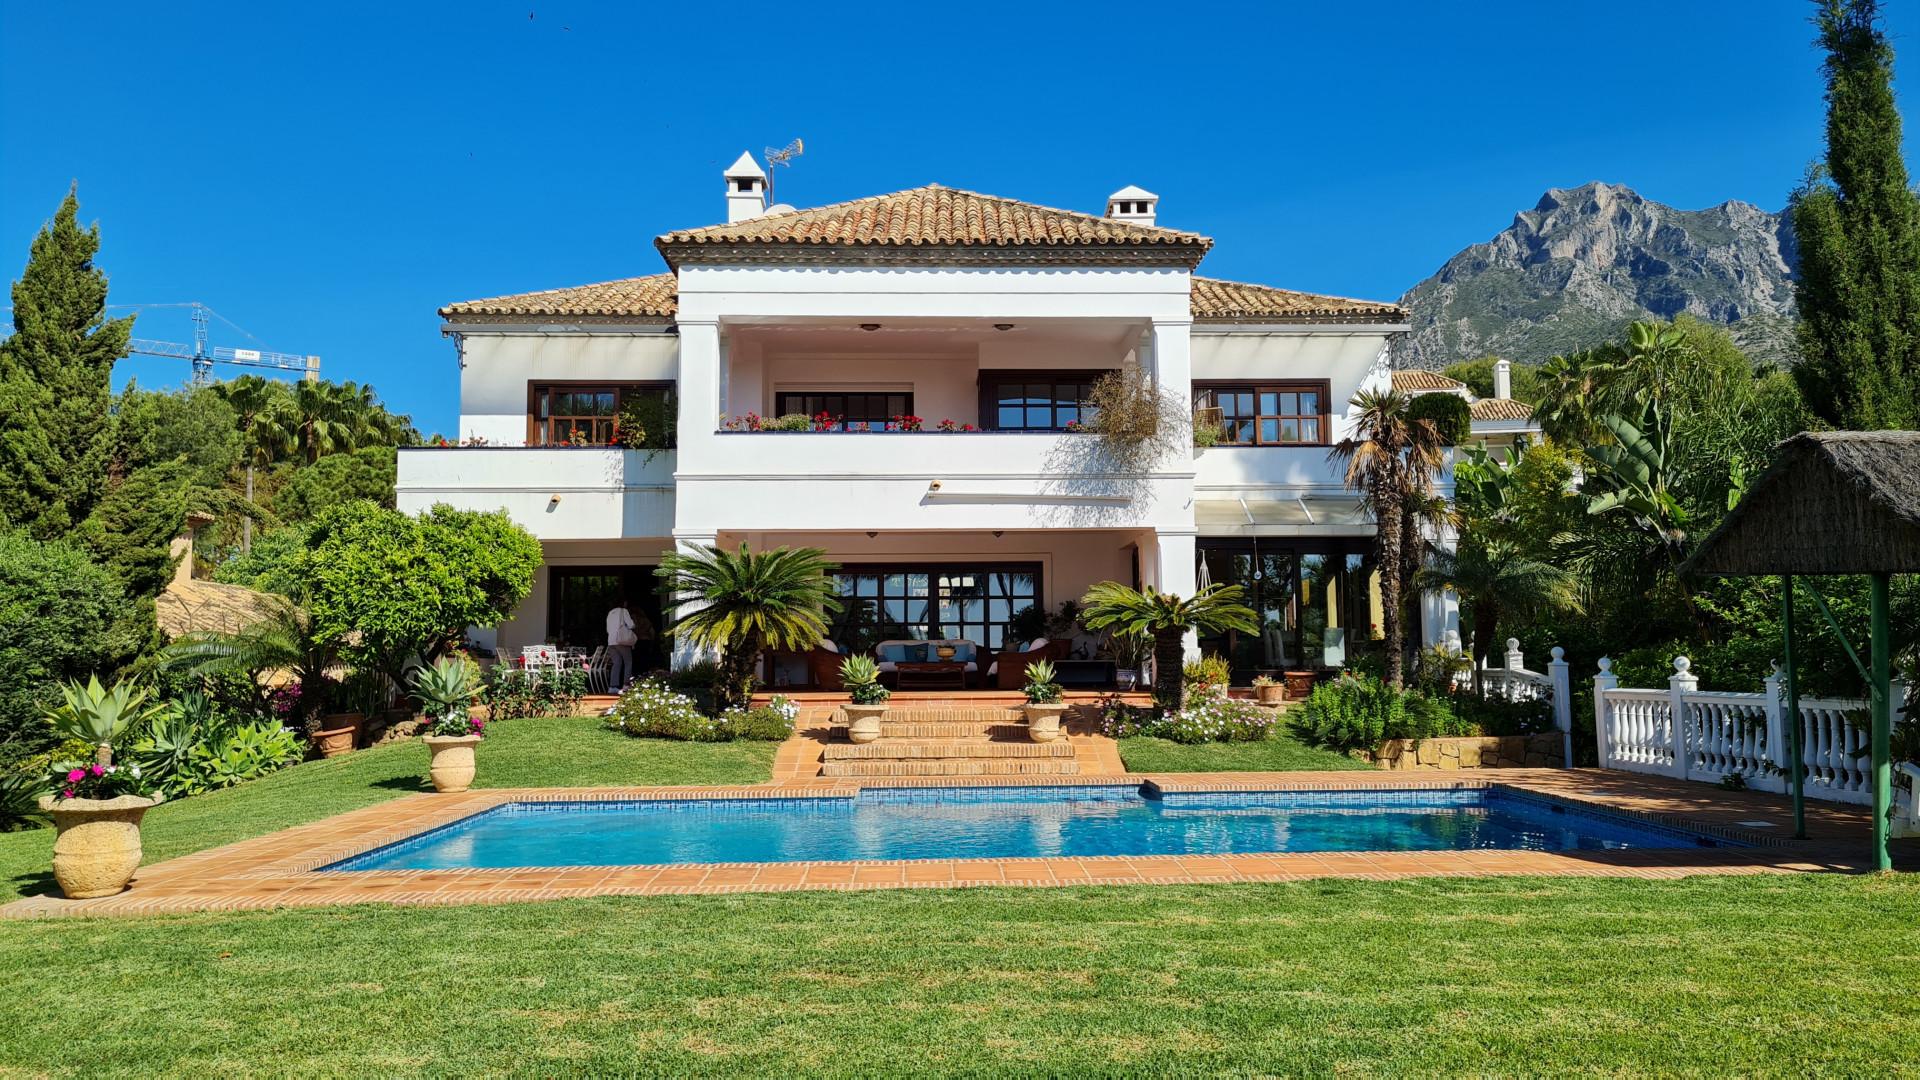 ARFV2338 - Mediterranean style villa for sale in Altos Reales Marbella